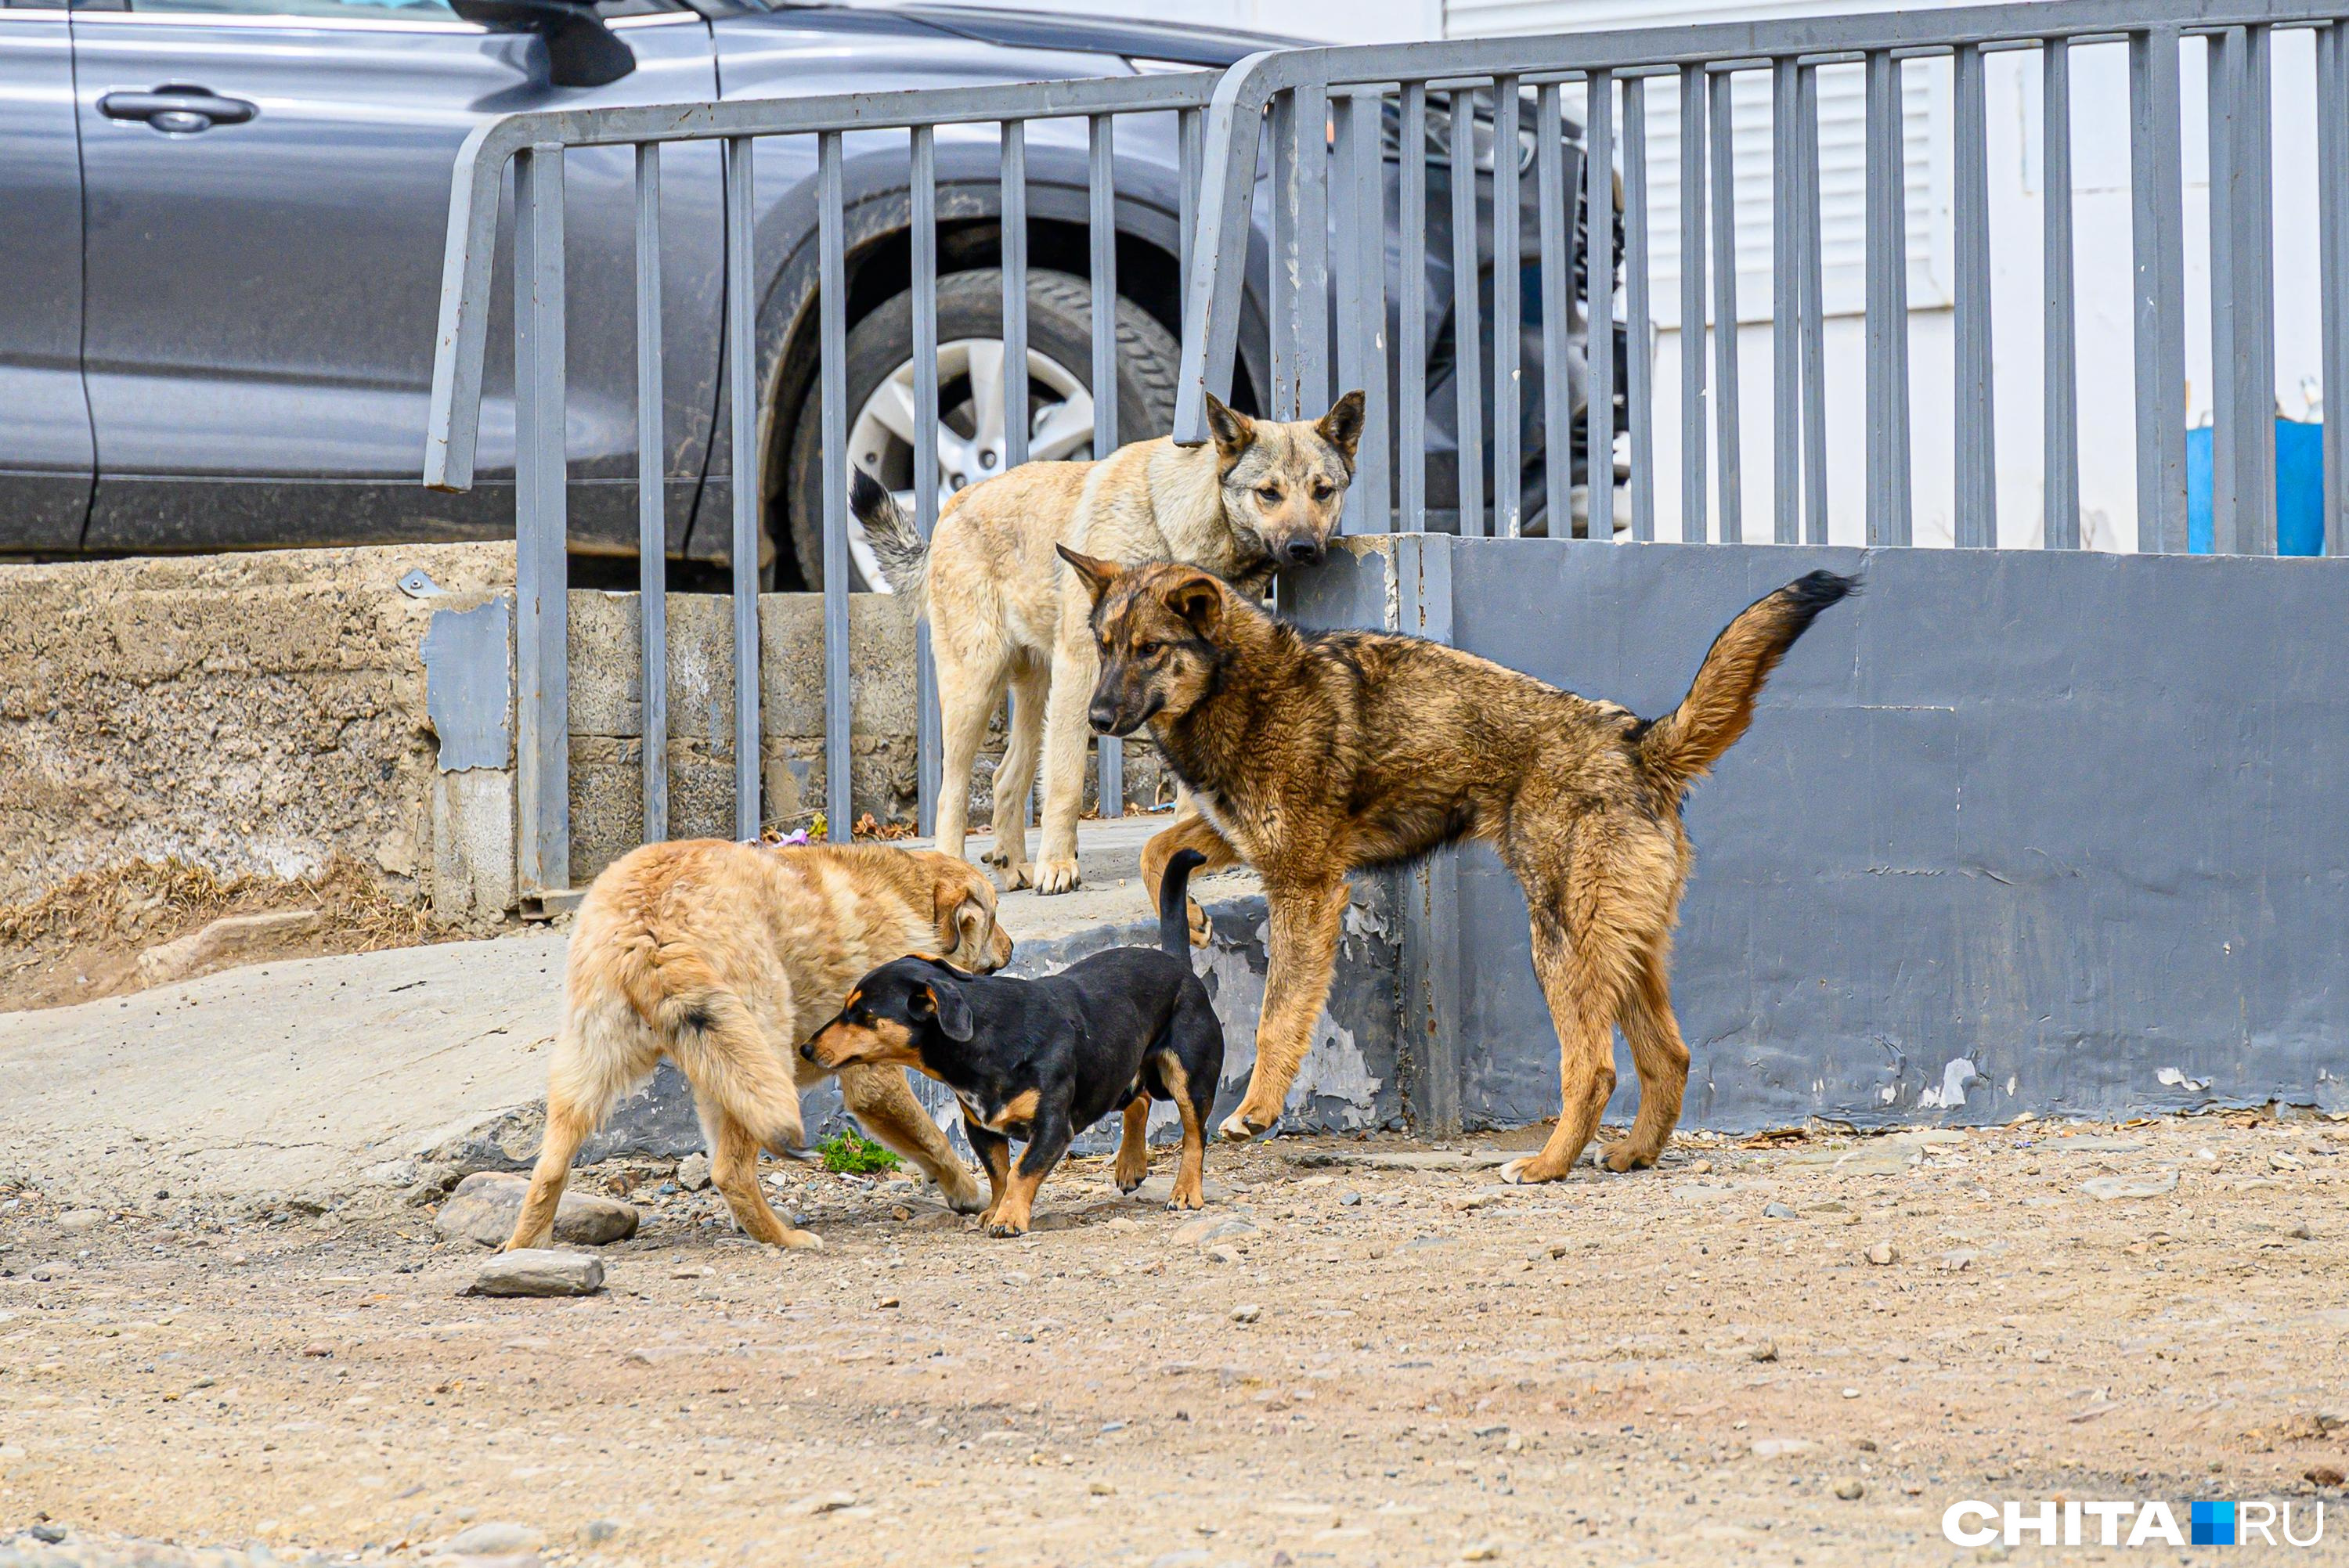 Зоозащитники пытаются попасть в приют для животных в Чите через суд